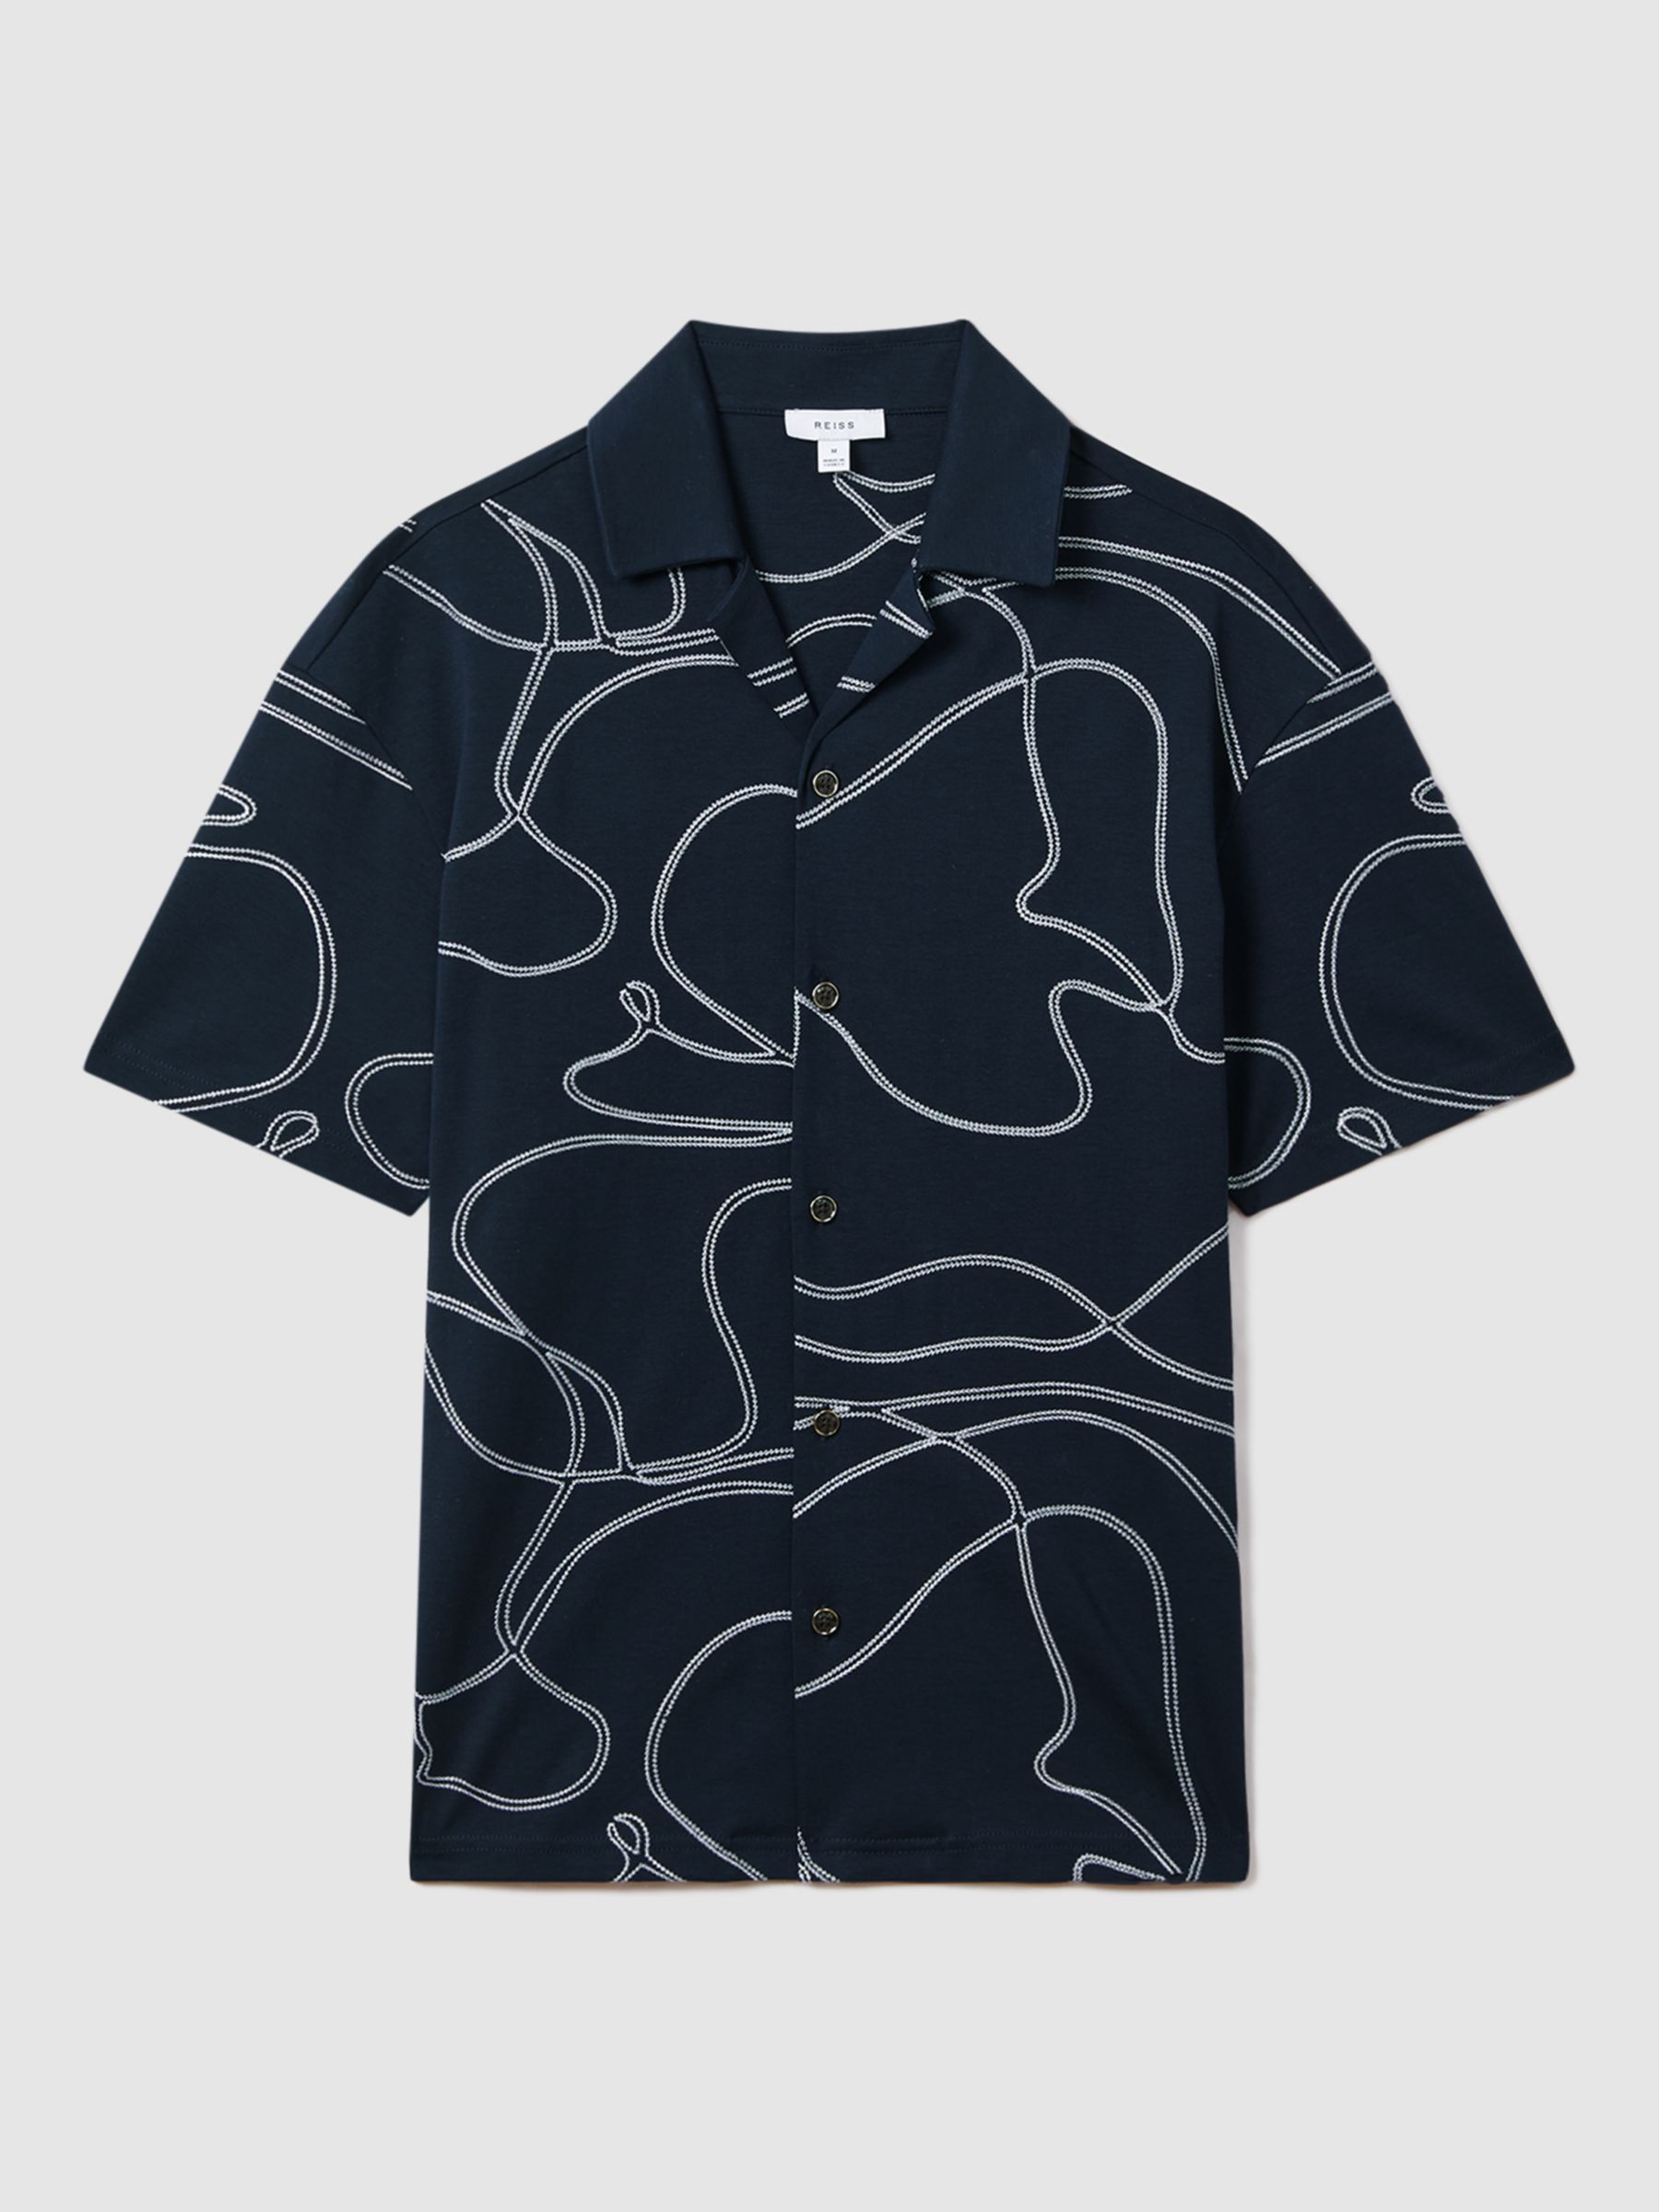 Reiss Menton Short Sleeve Swirl Embroidered Shirt, Blue/White, S